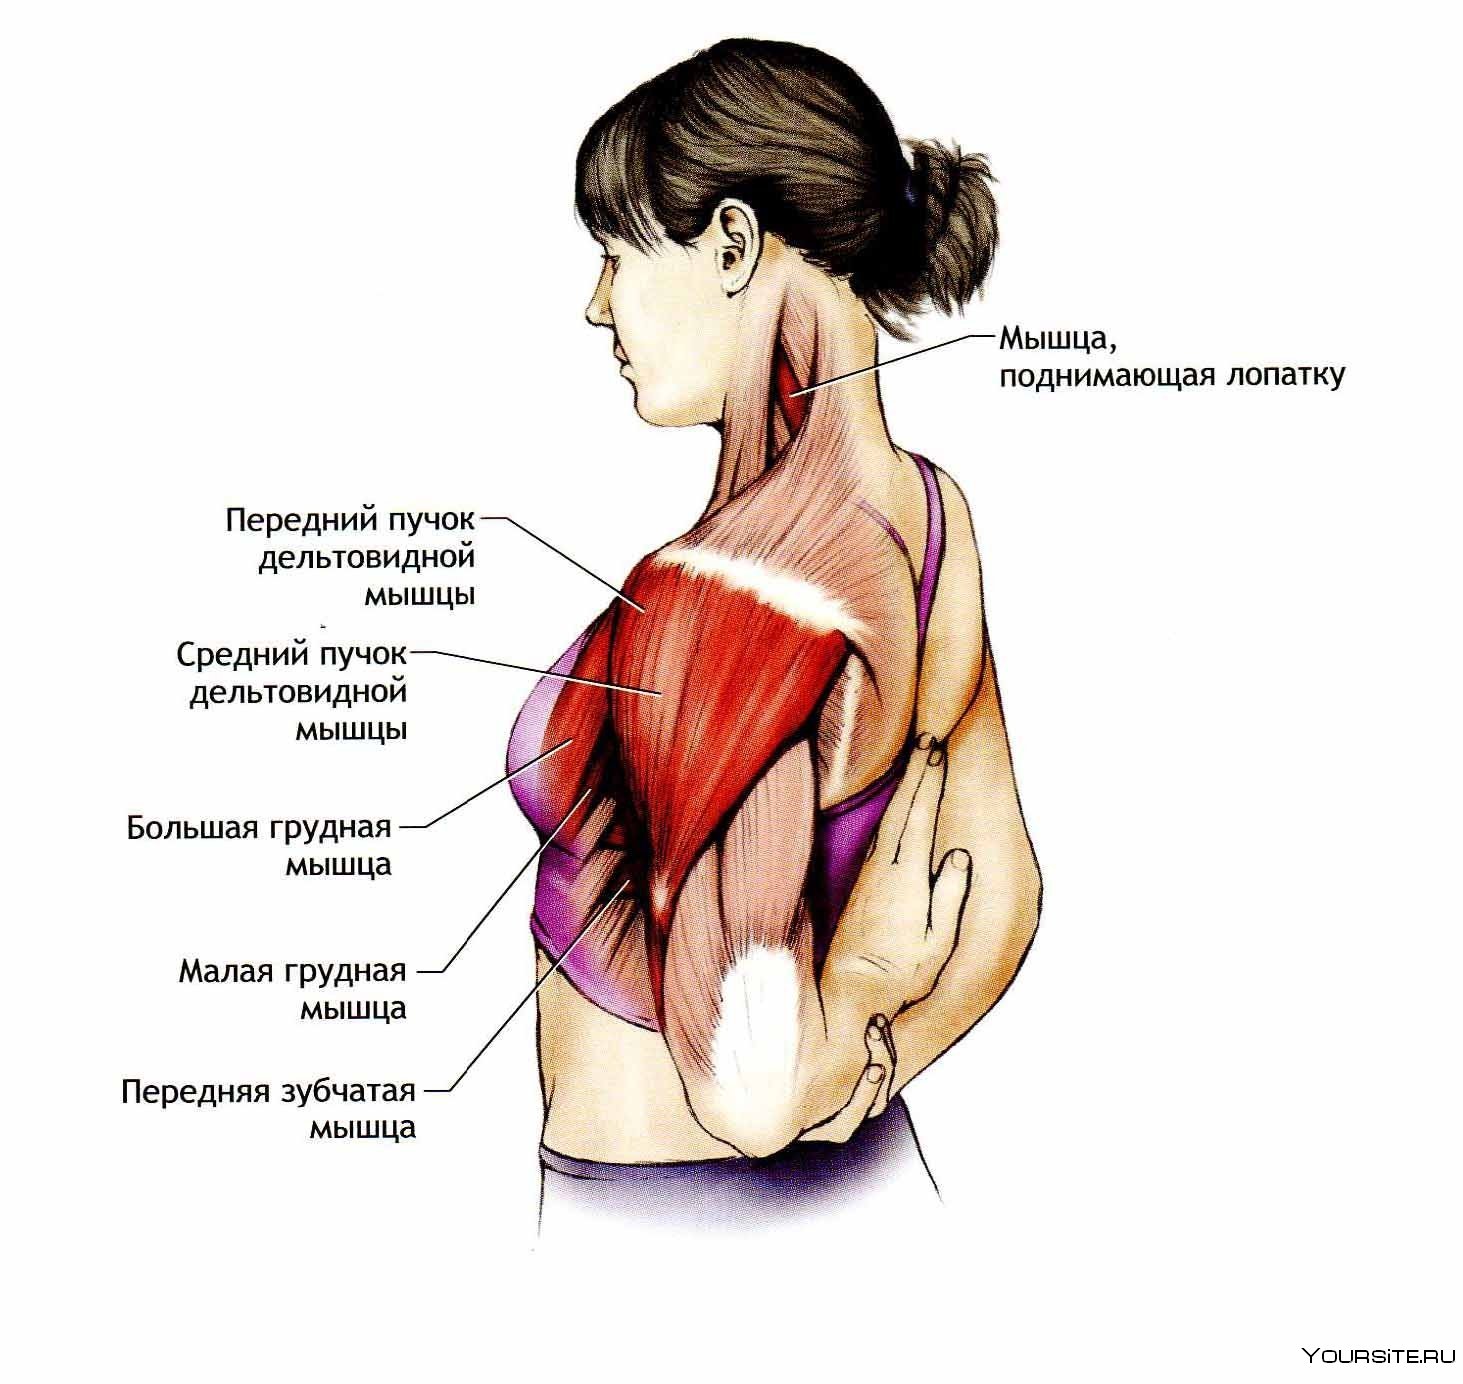 упражнения на мышцы груди у женщин фото 61